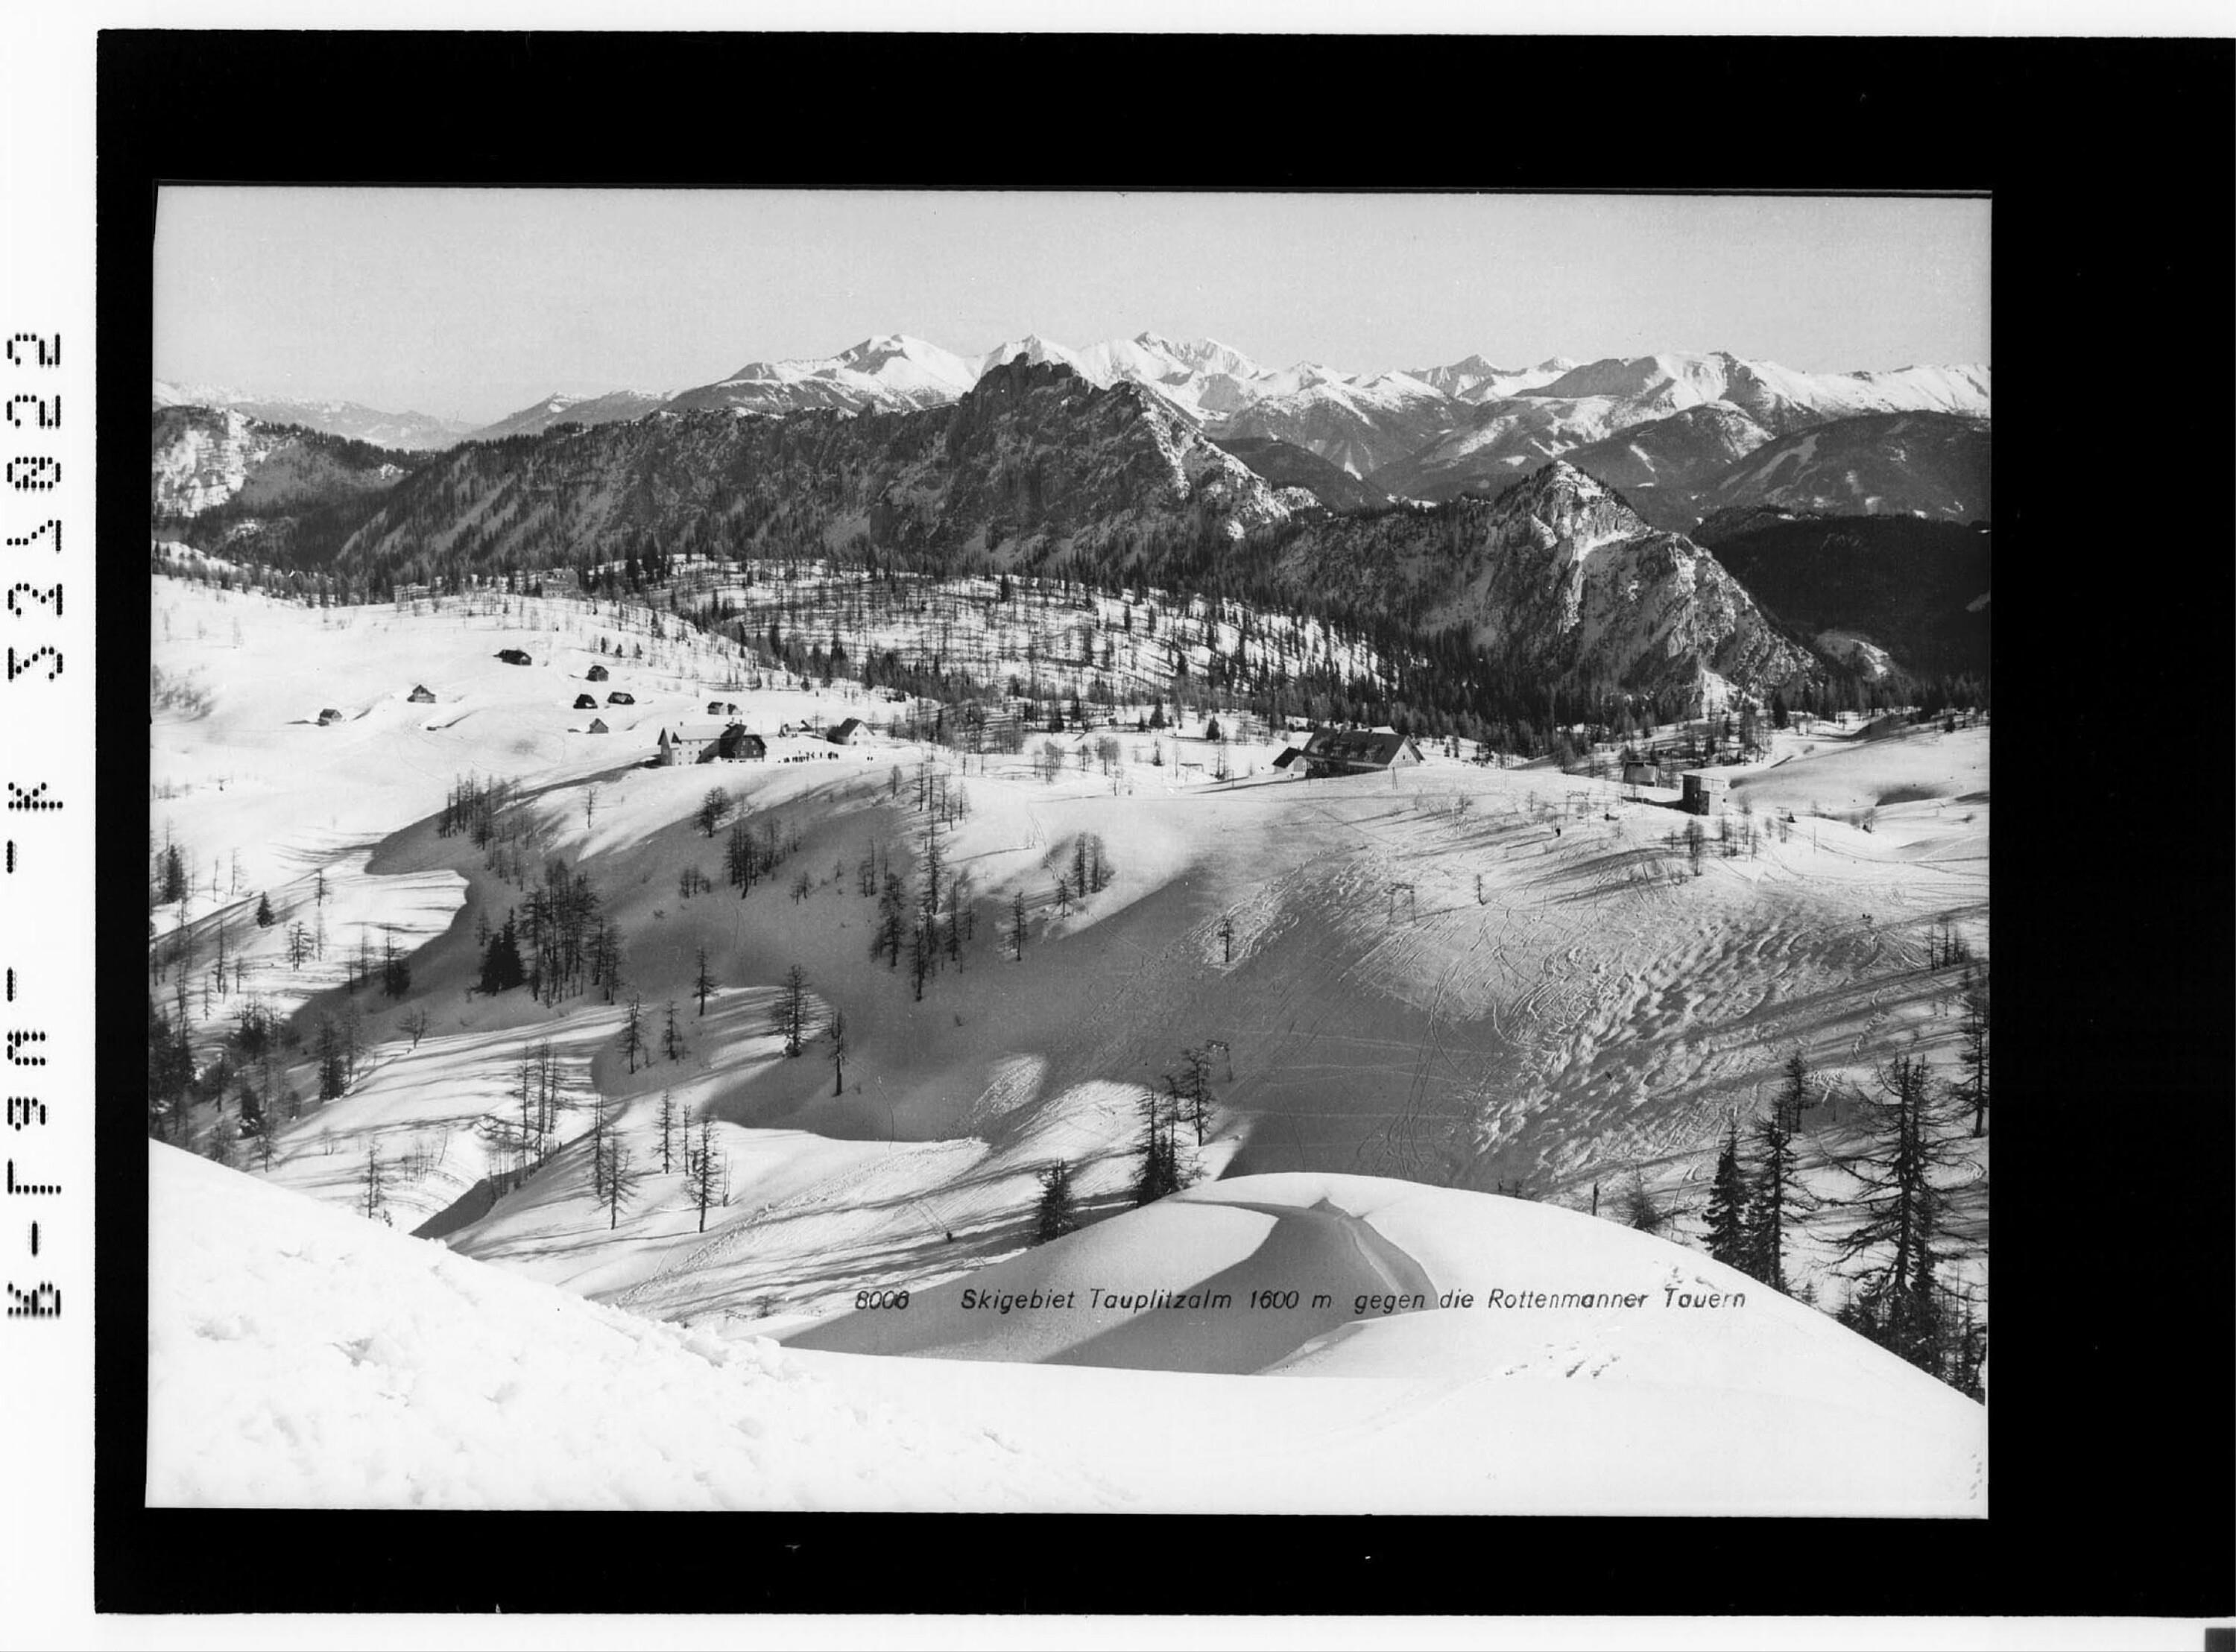 Skigebiet Tauplitzalm 1600 m gegen die Rottenmanner Tauern></div>


    <hr>
    <div class=